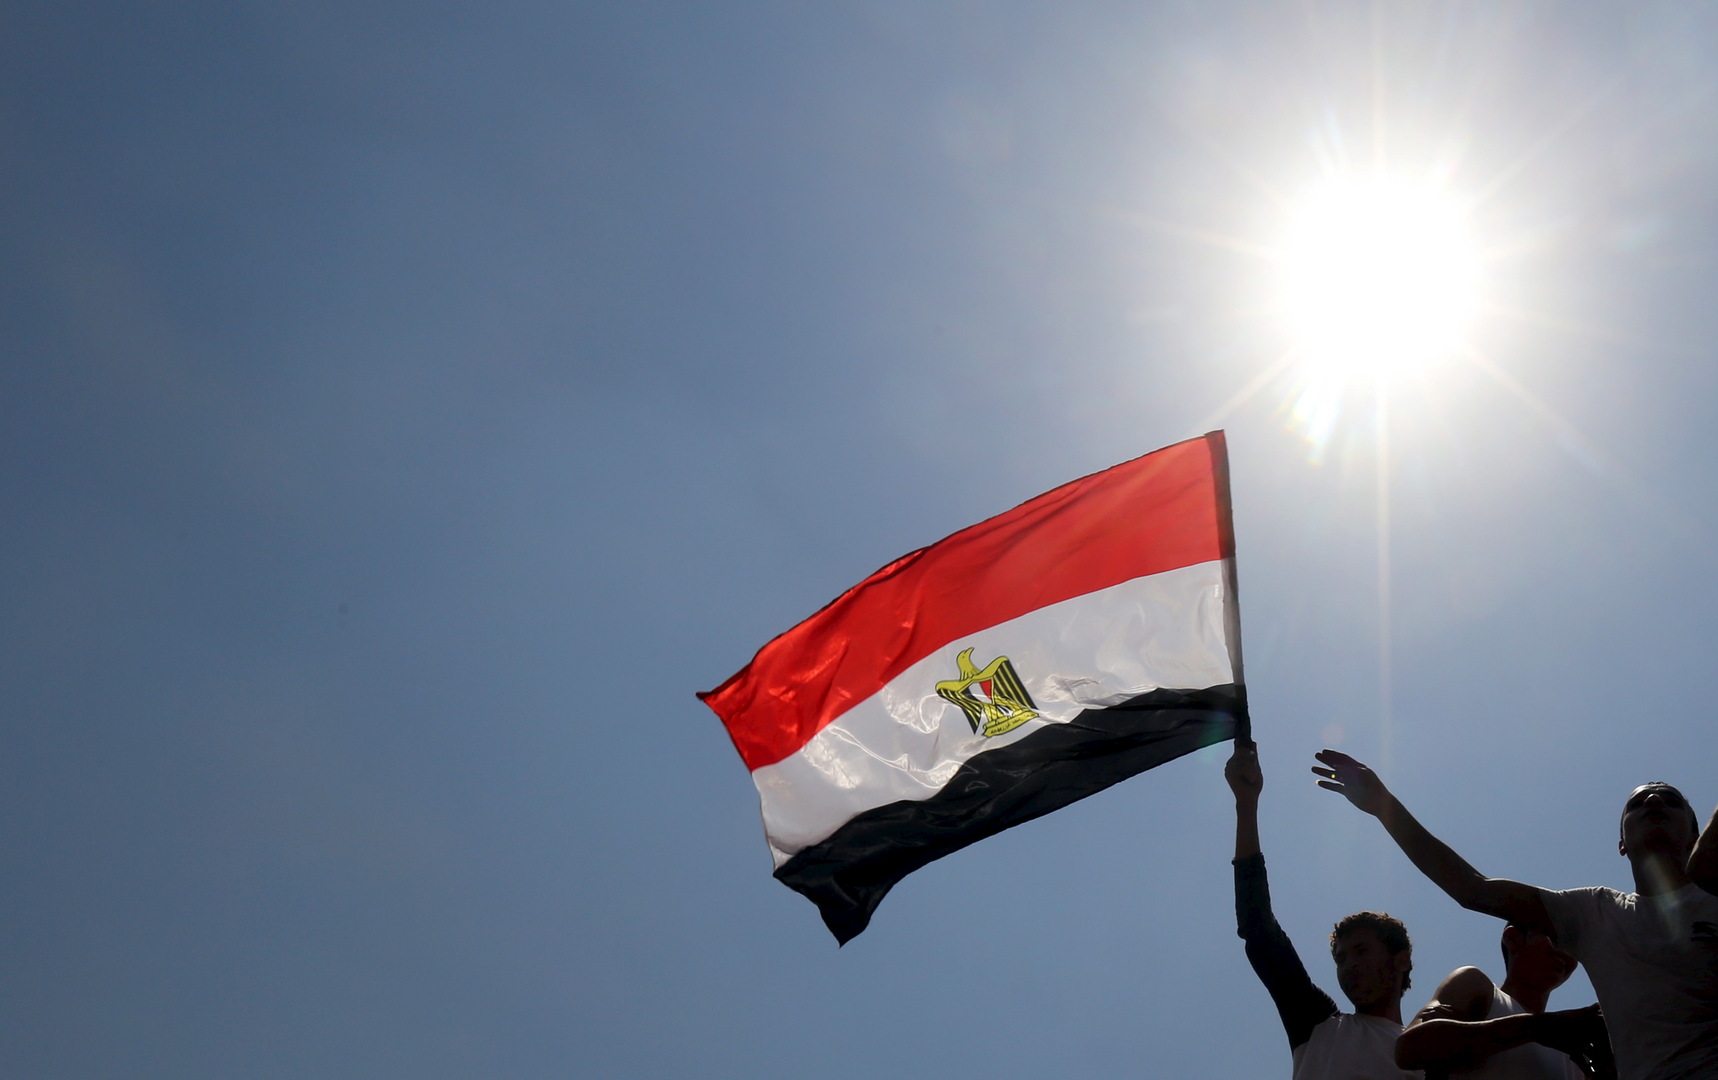 وزارة الزراعة المصرية ترفع درجة الاستعداد القصوى